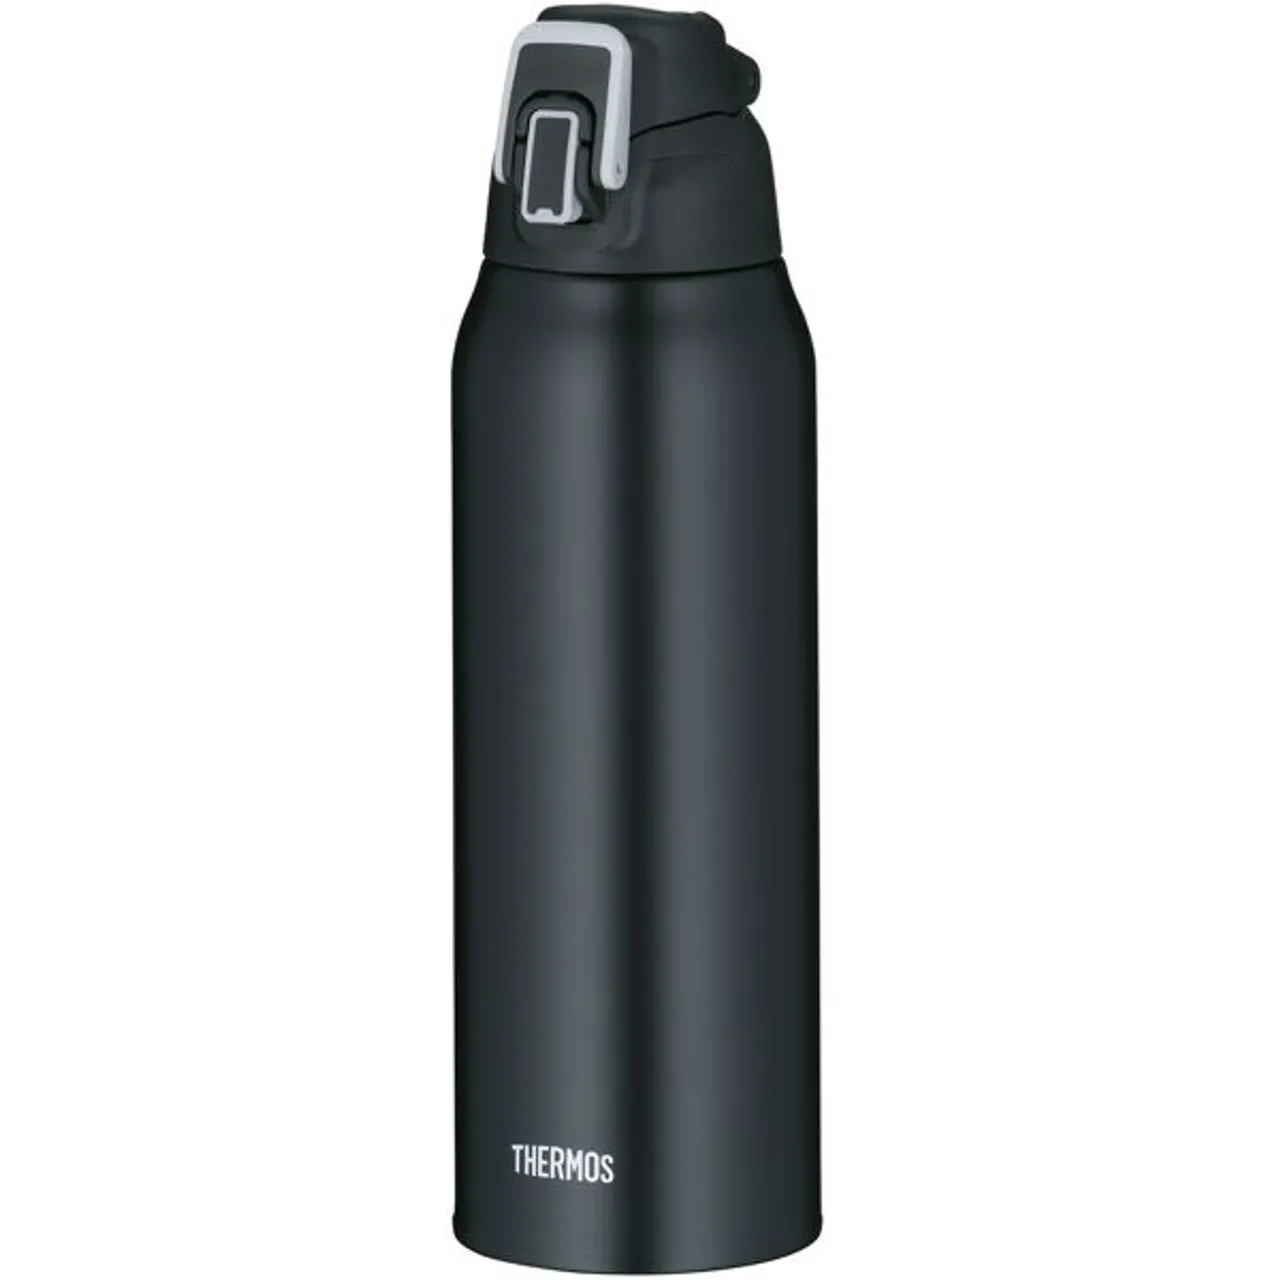 Thermoflasche THERMOS "Ultralight" Trinkflaschen Gr. 1000 ml, schwarz Thermoflaschen, Isolierflaschen und Trinkflaschen